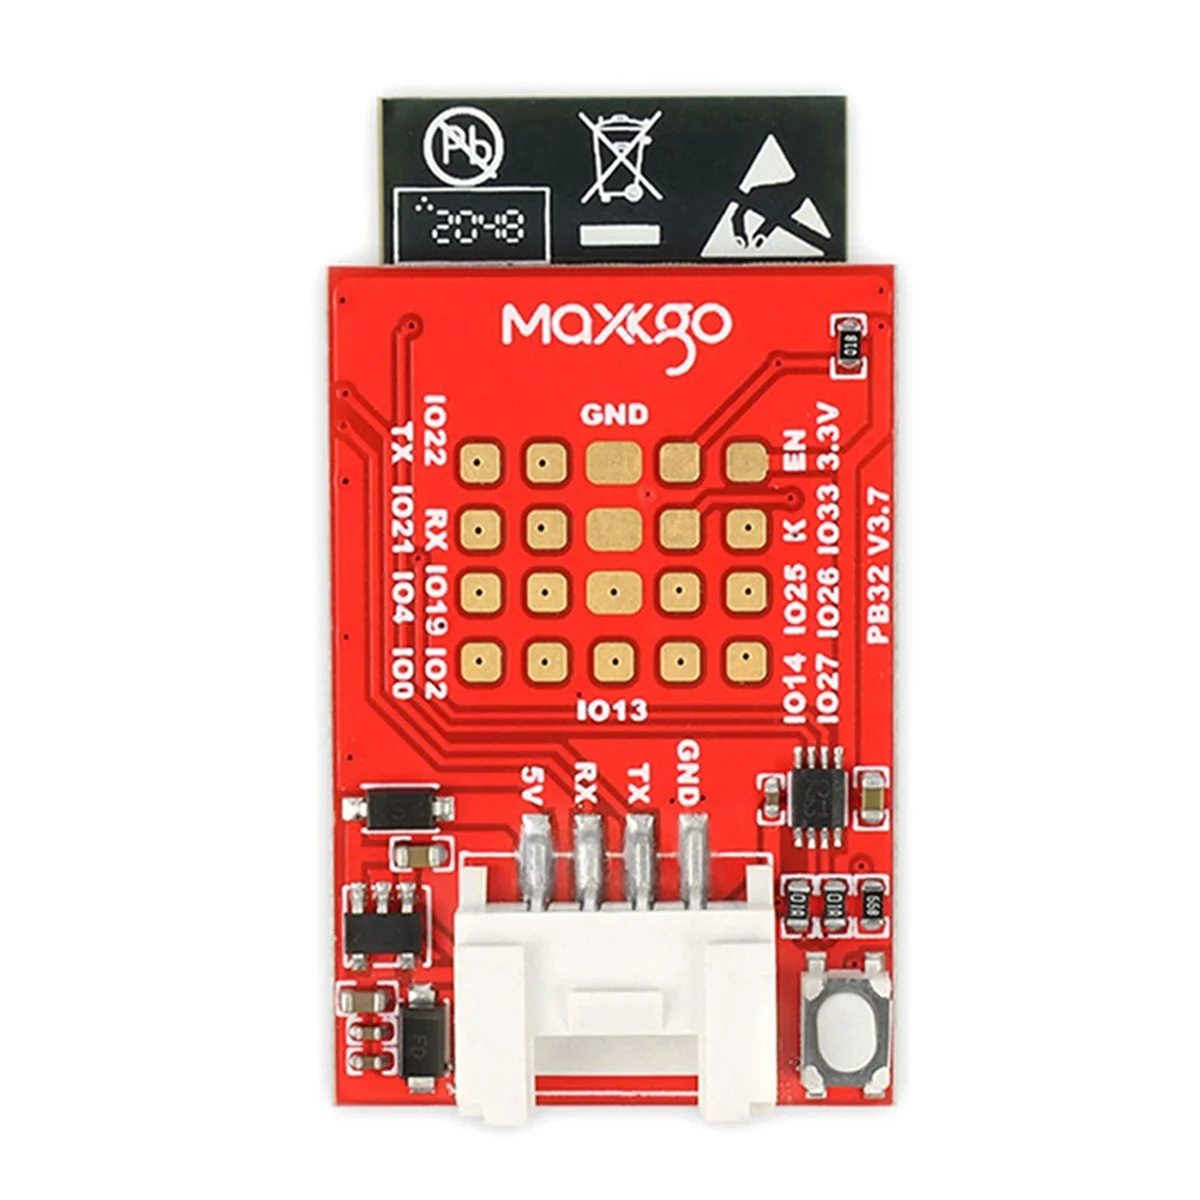 Контроллер света MAXKGO ESK8 RGB для электрического скейтборда, совместимый с контроллером светодиодной ленты VESC/FSESC/Focbox